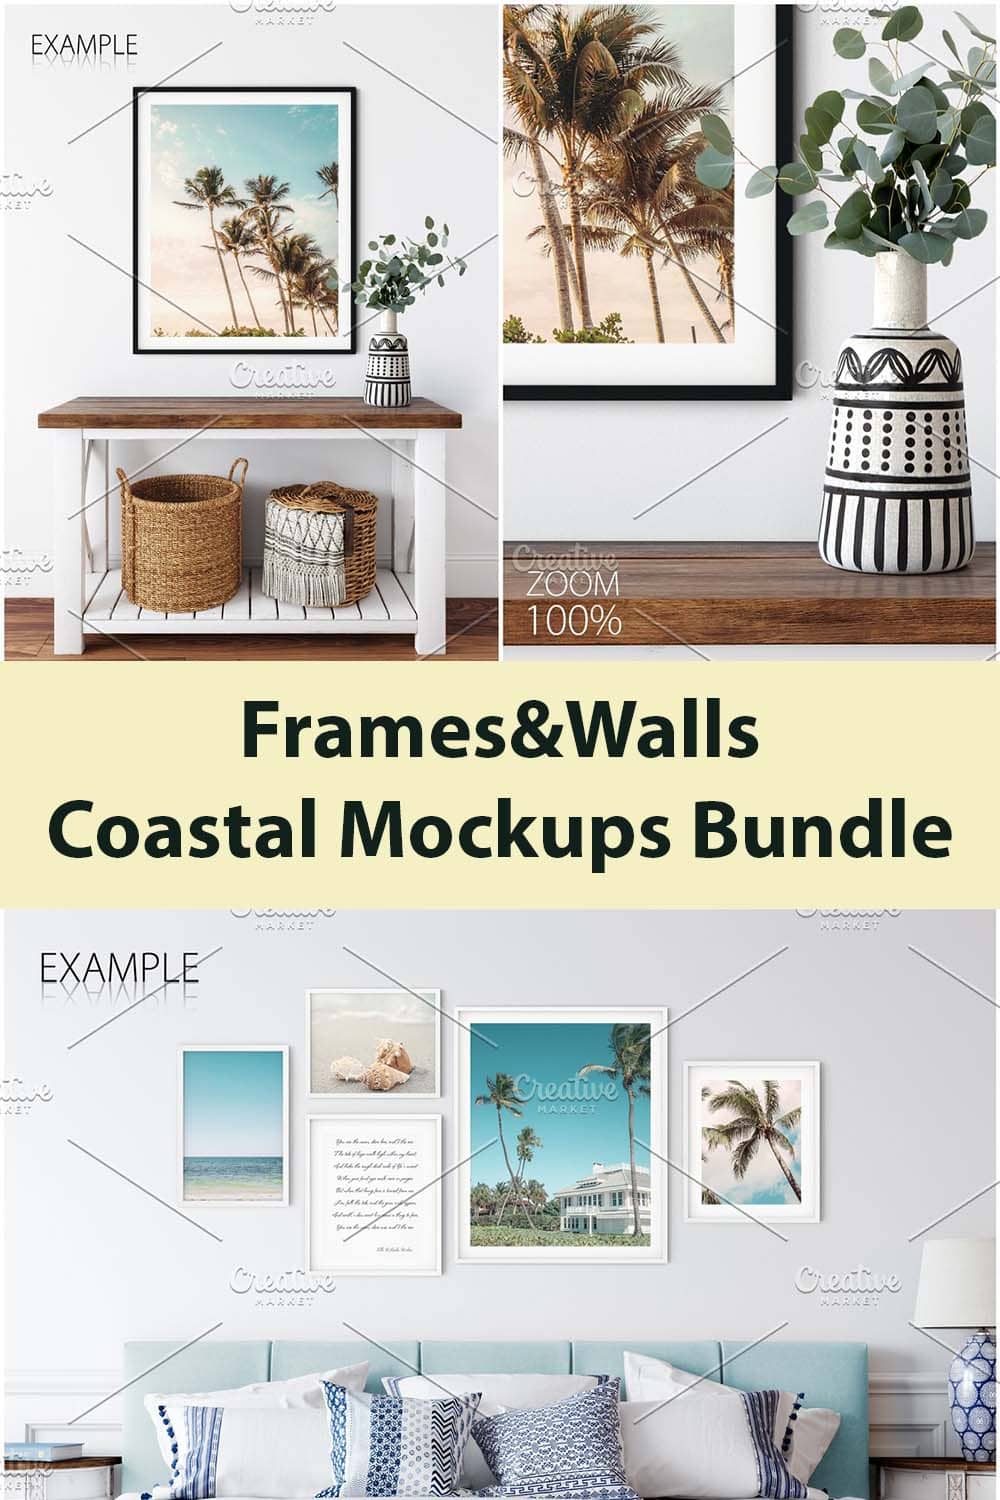 FramesWalls Coastal Mockups Bundle Pinterest image.